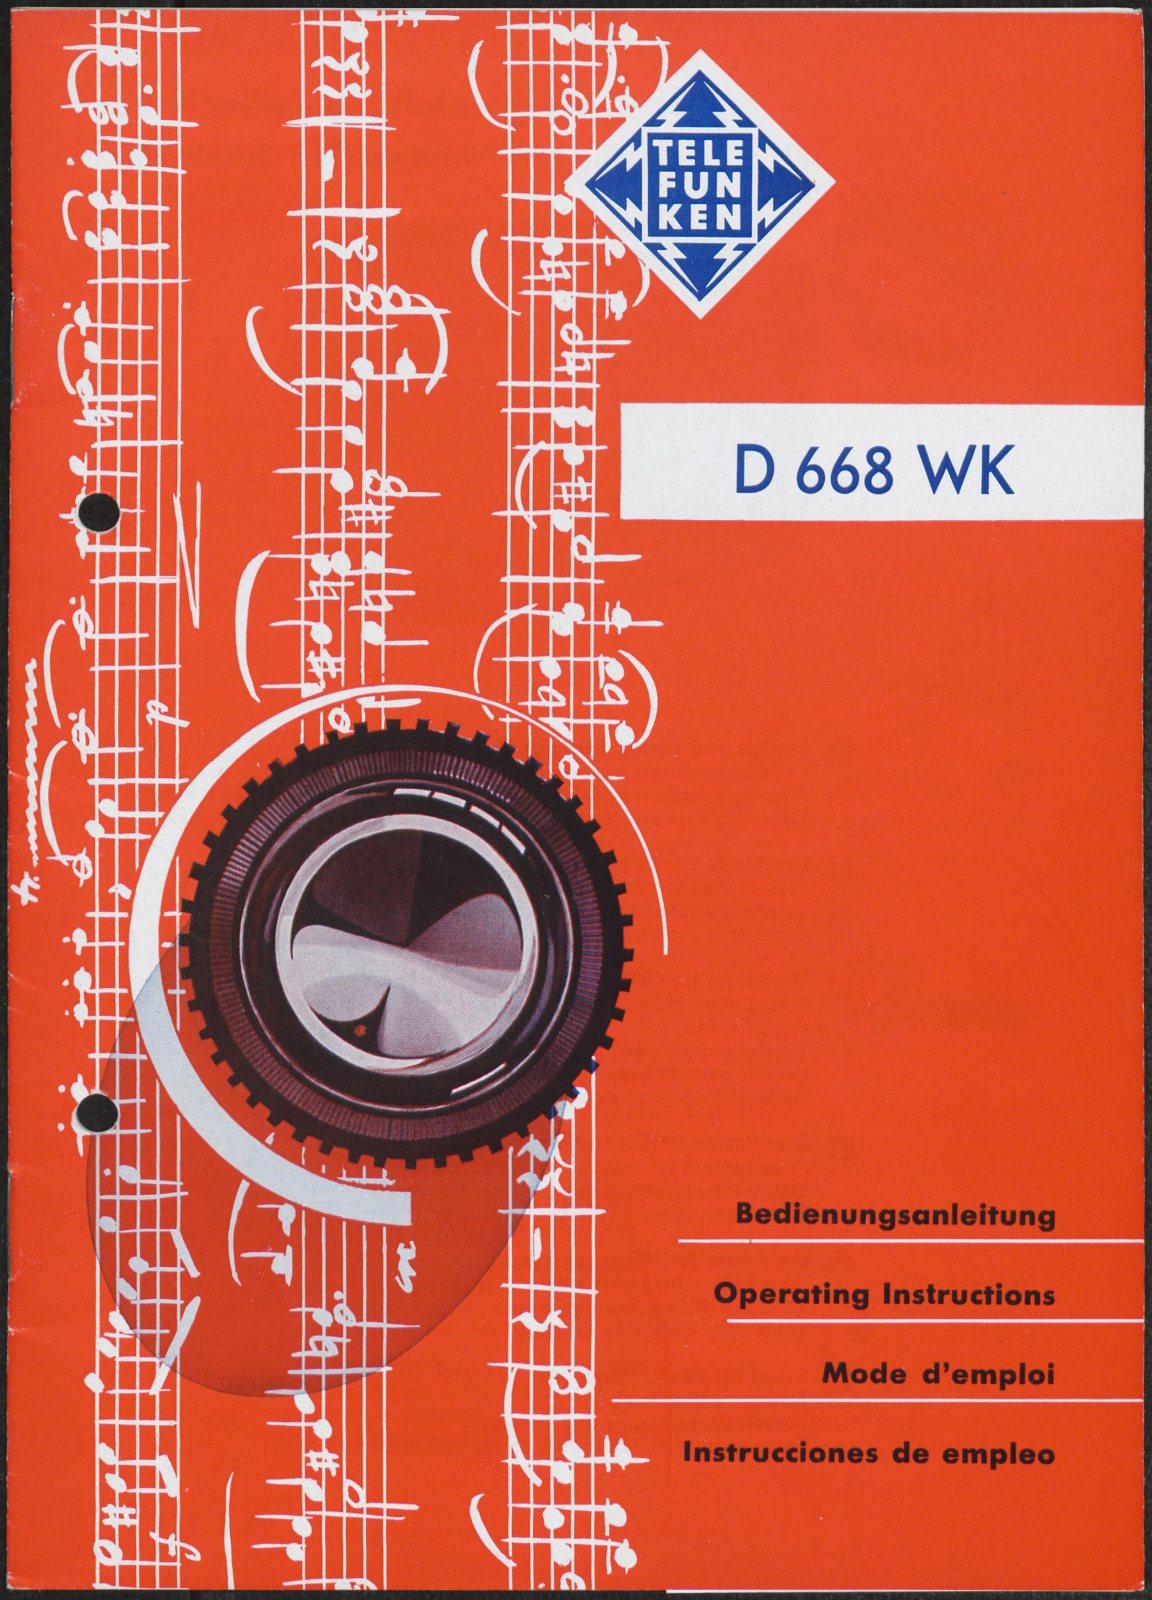 Bedienungsanleitung: D 668 WK Bedienungsanleitung (Stiftung Deutsches Technikmuseum Berlin CC0)